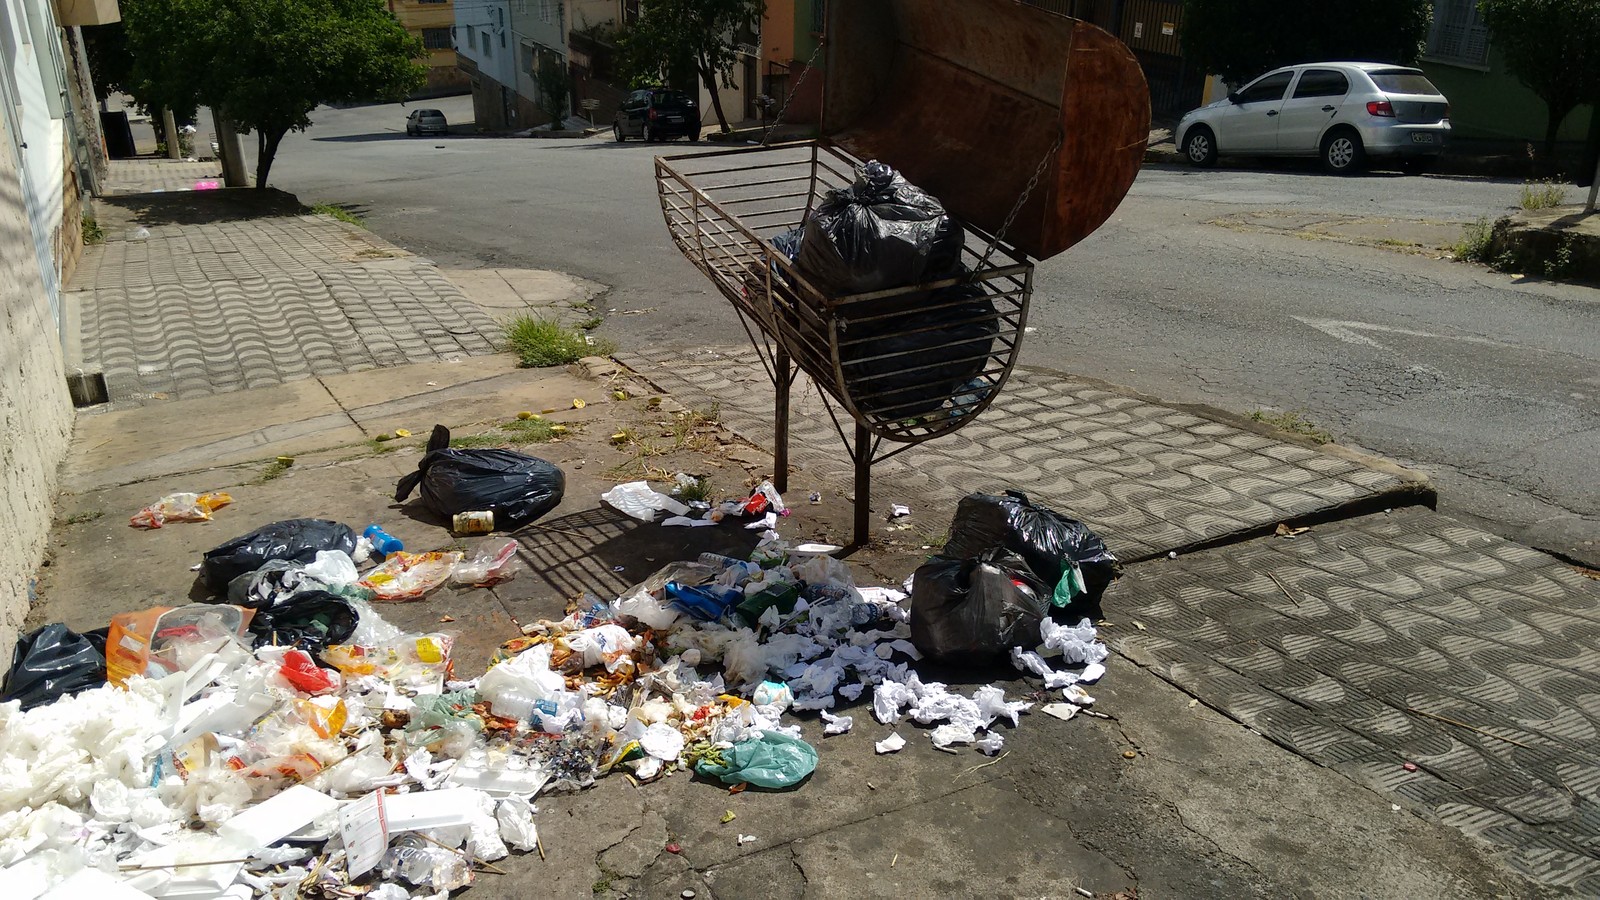 Comissão de vereadores aprova multa de R$ 100,00 para quem jogar lixo na rua